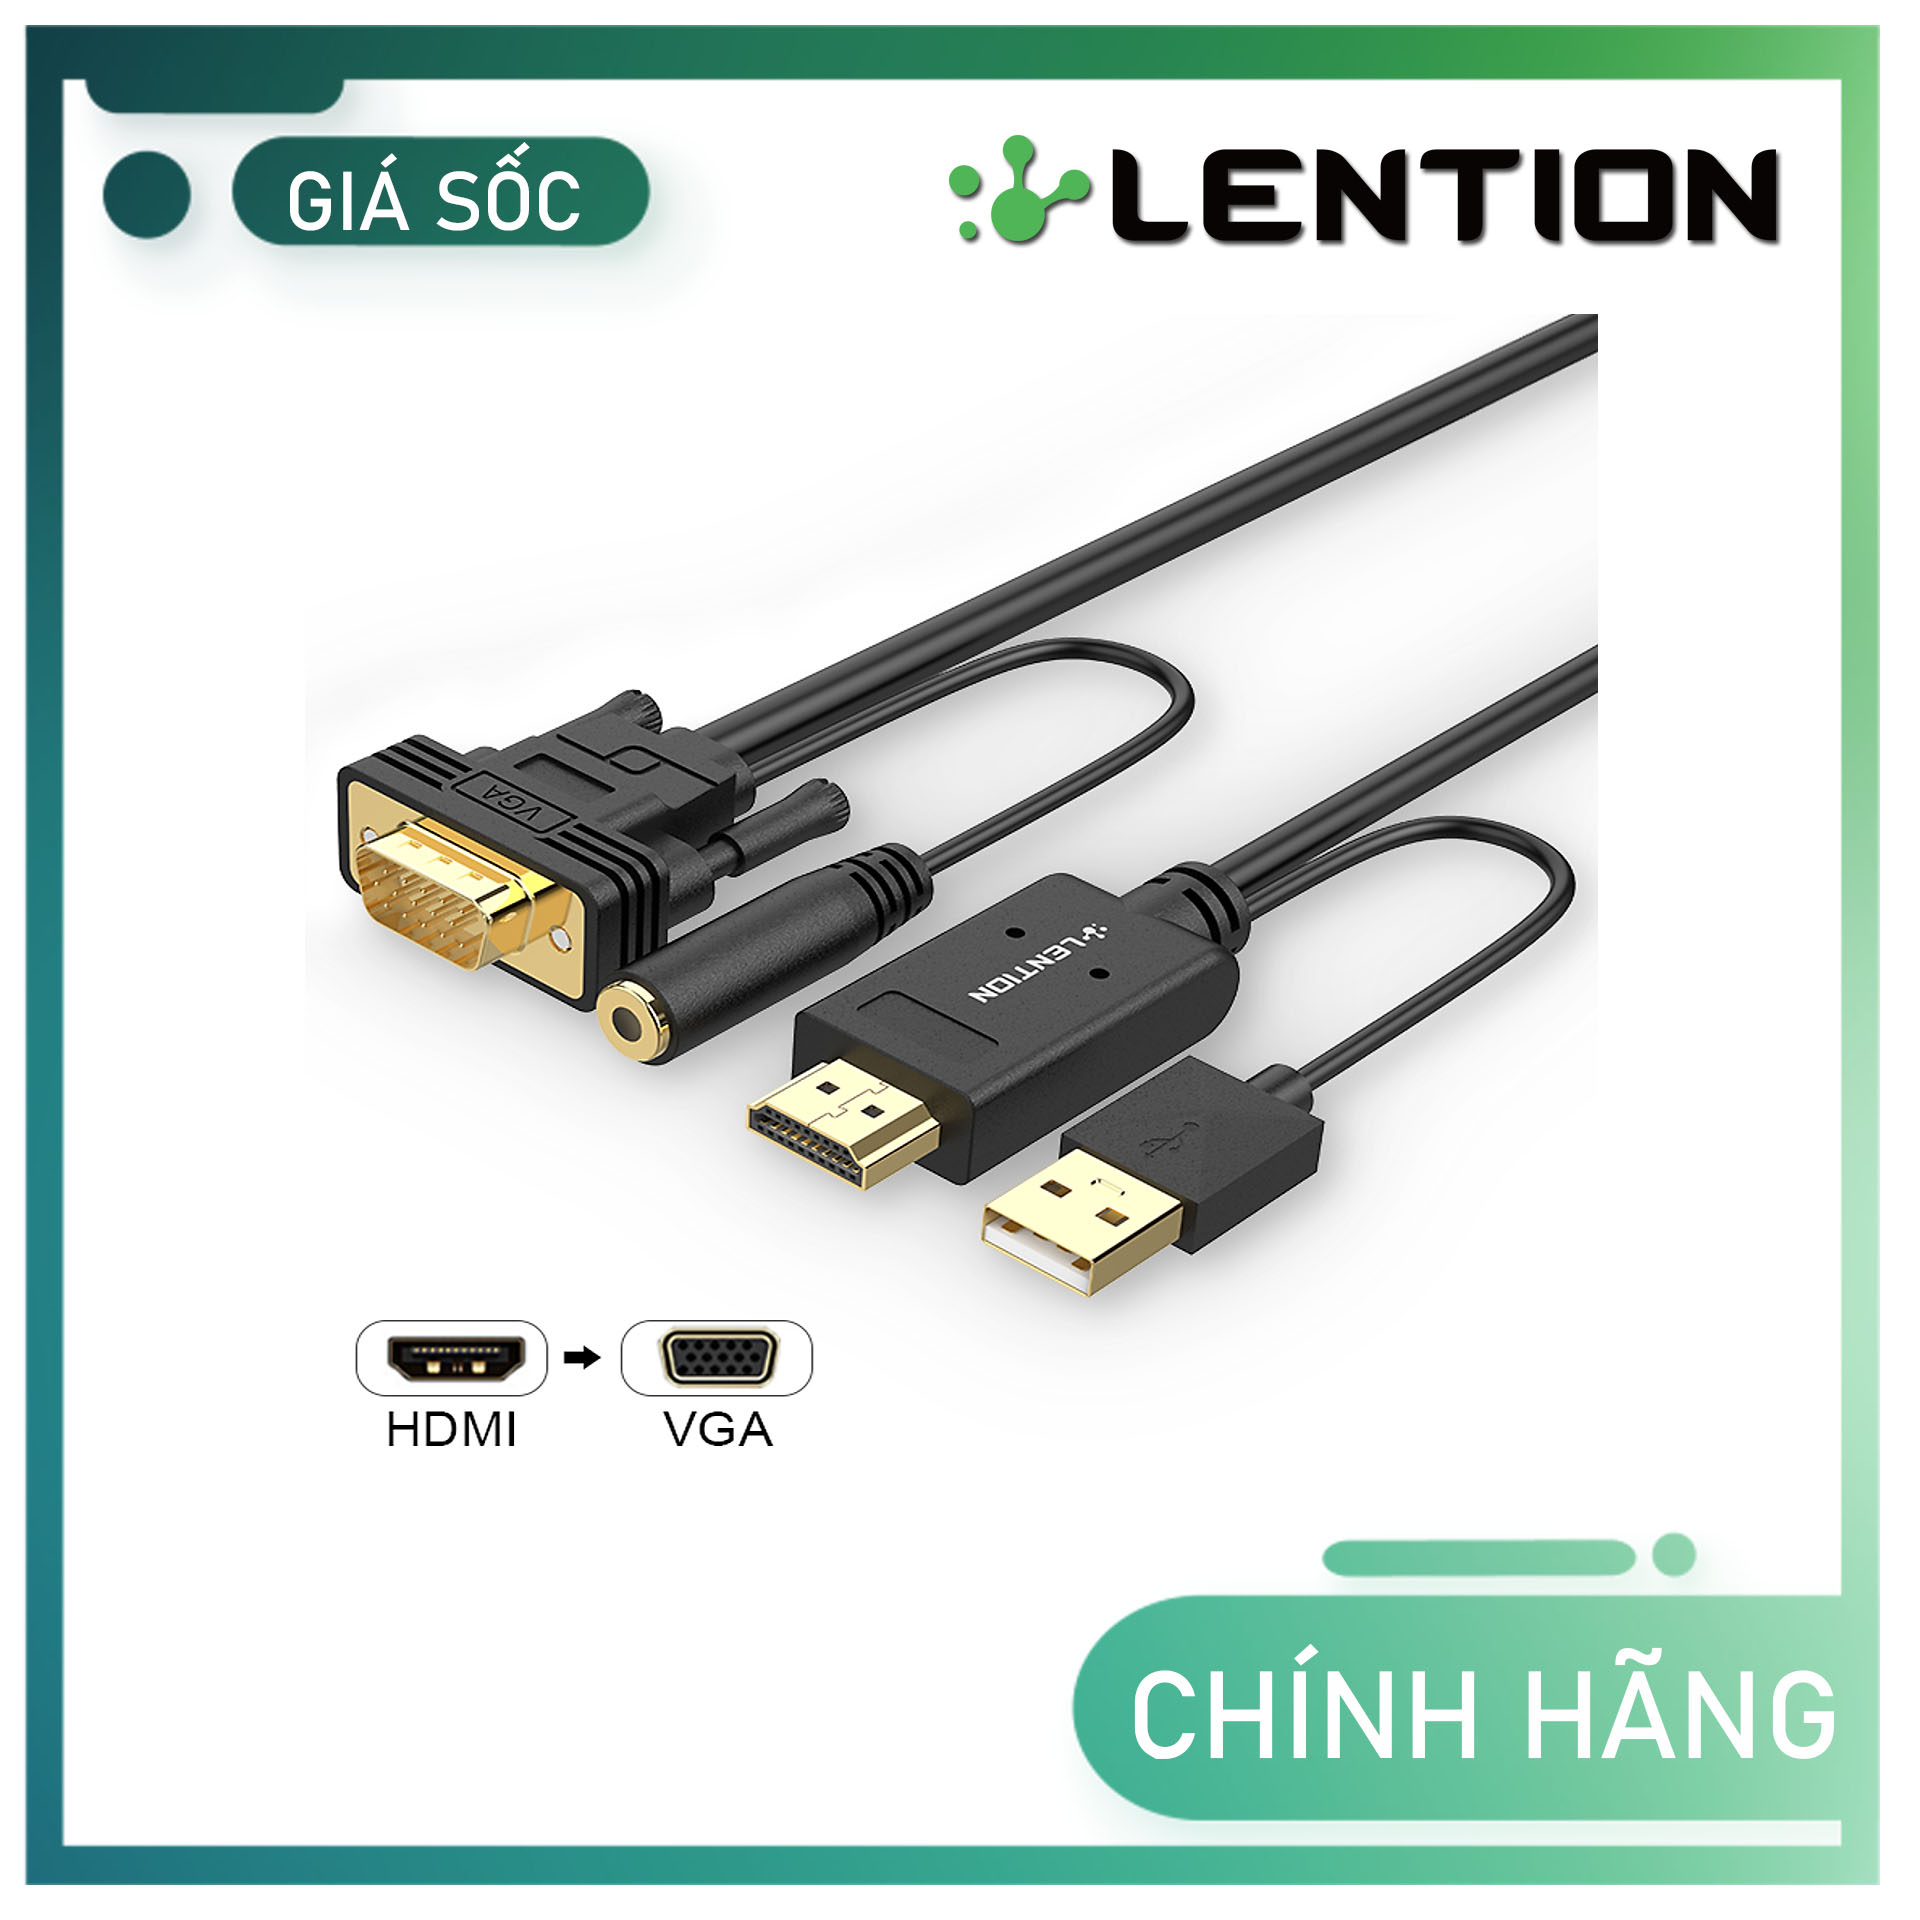 Cáp chuyển đổi HDMI sang VGA  Audio LENTION HPVA Hàng Chính Hãng